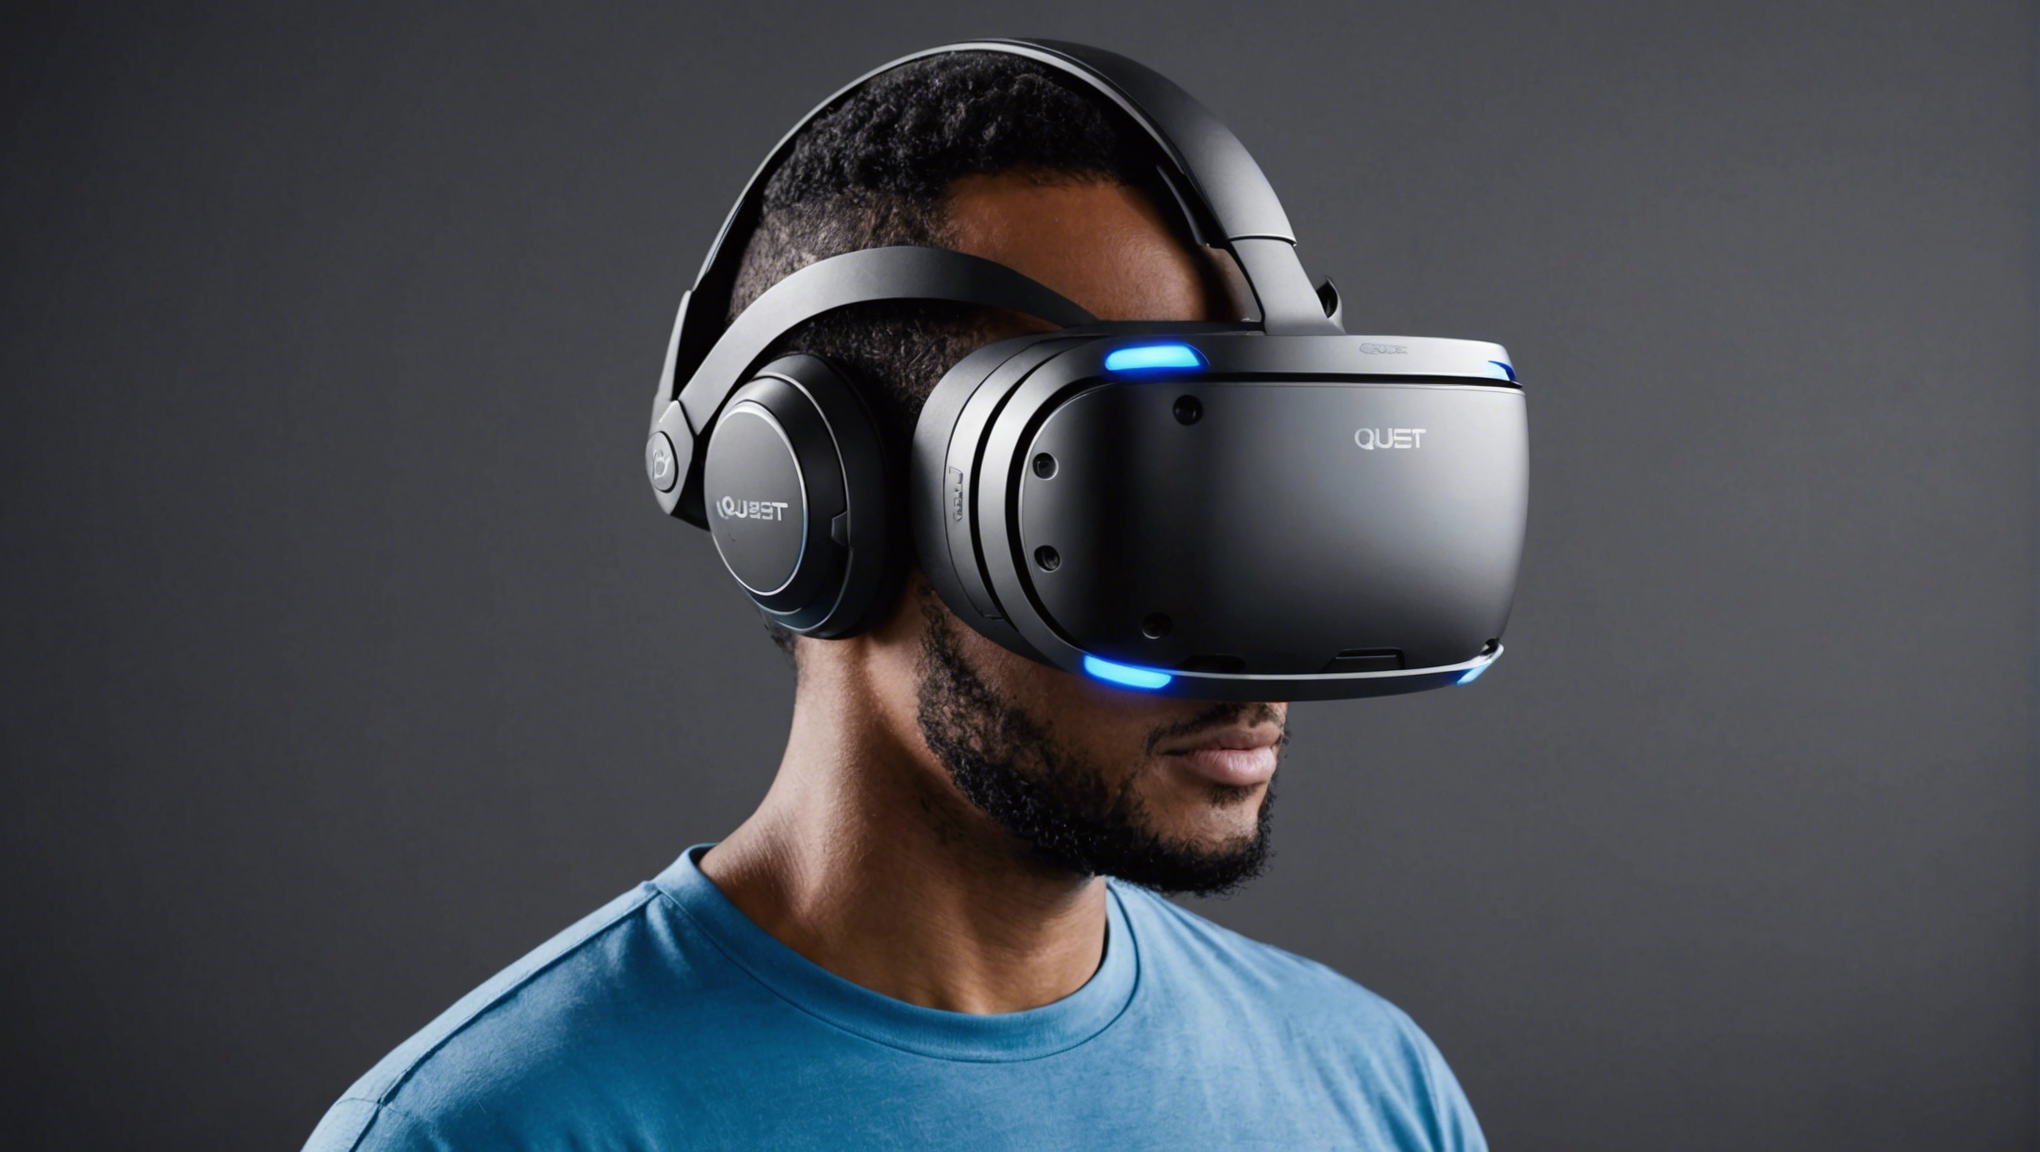 découvrez les fonctionnalités principales du casque de réalité virtuelle meta quest 2 et plongez dans une expérience immersive unique. explorez ses capacités et ses spécificités pour une immersion totale dans le monde de la réalité virtuelle.